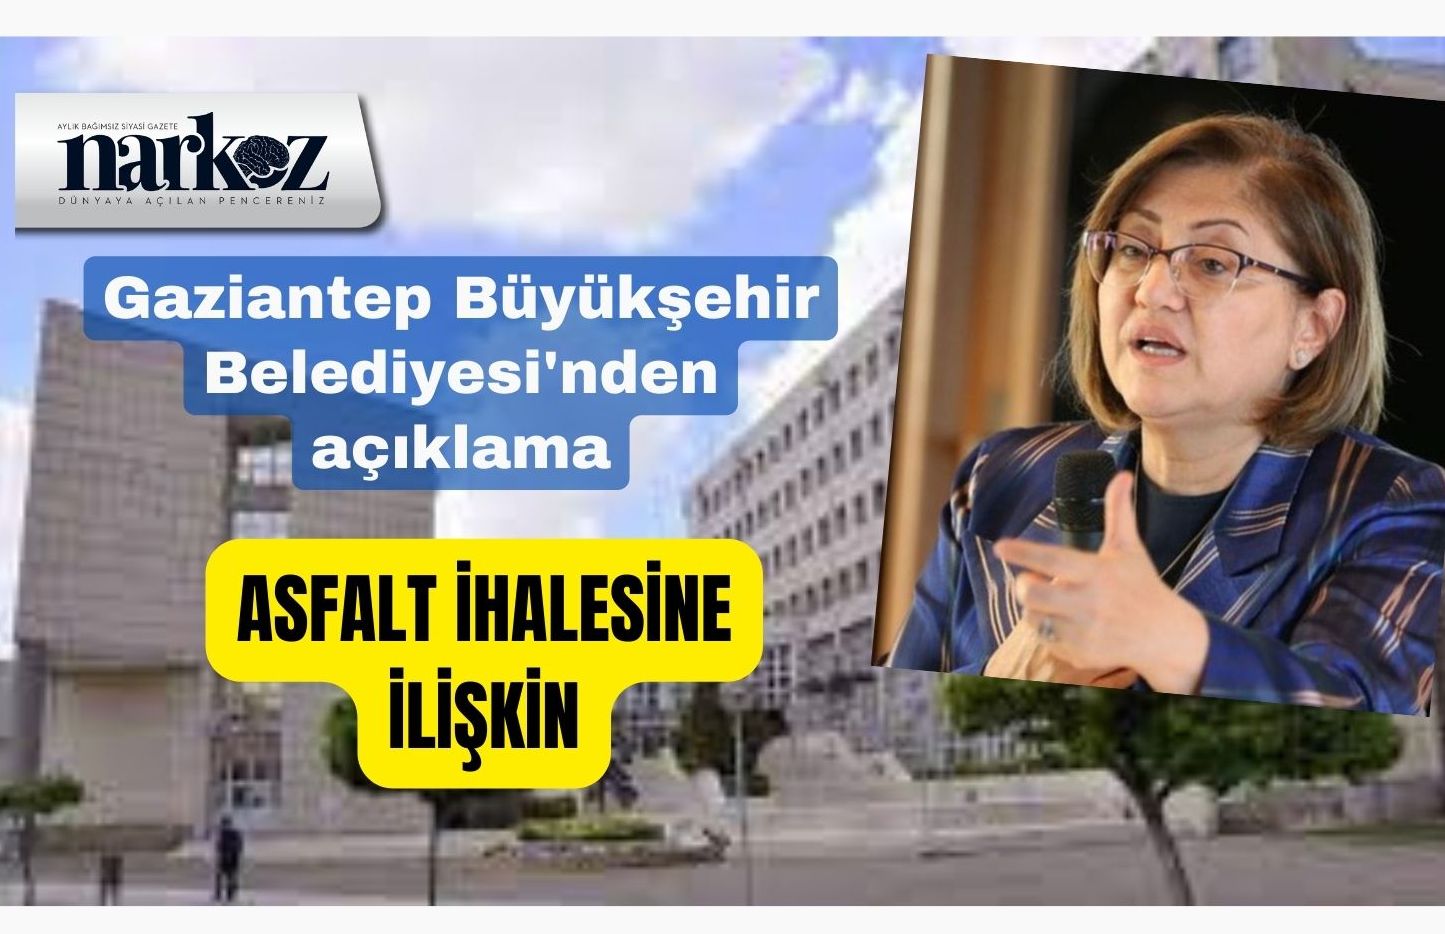 Gaziantep Büyükşehir Belediyesi'nden, asfalt yapım ihalesine ilişkin açıklama geldi